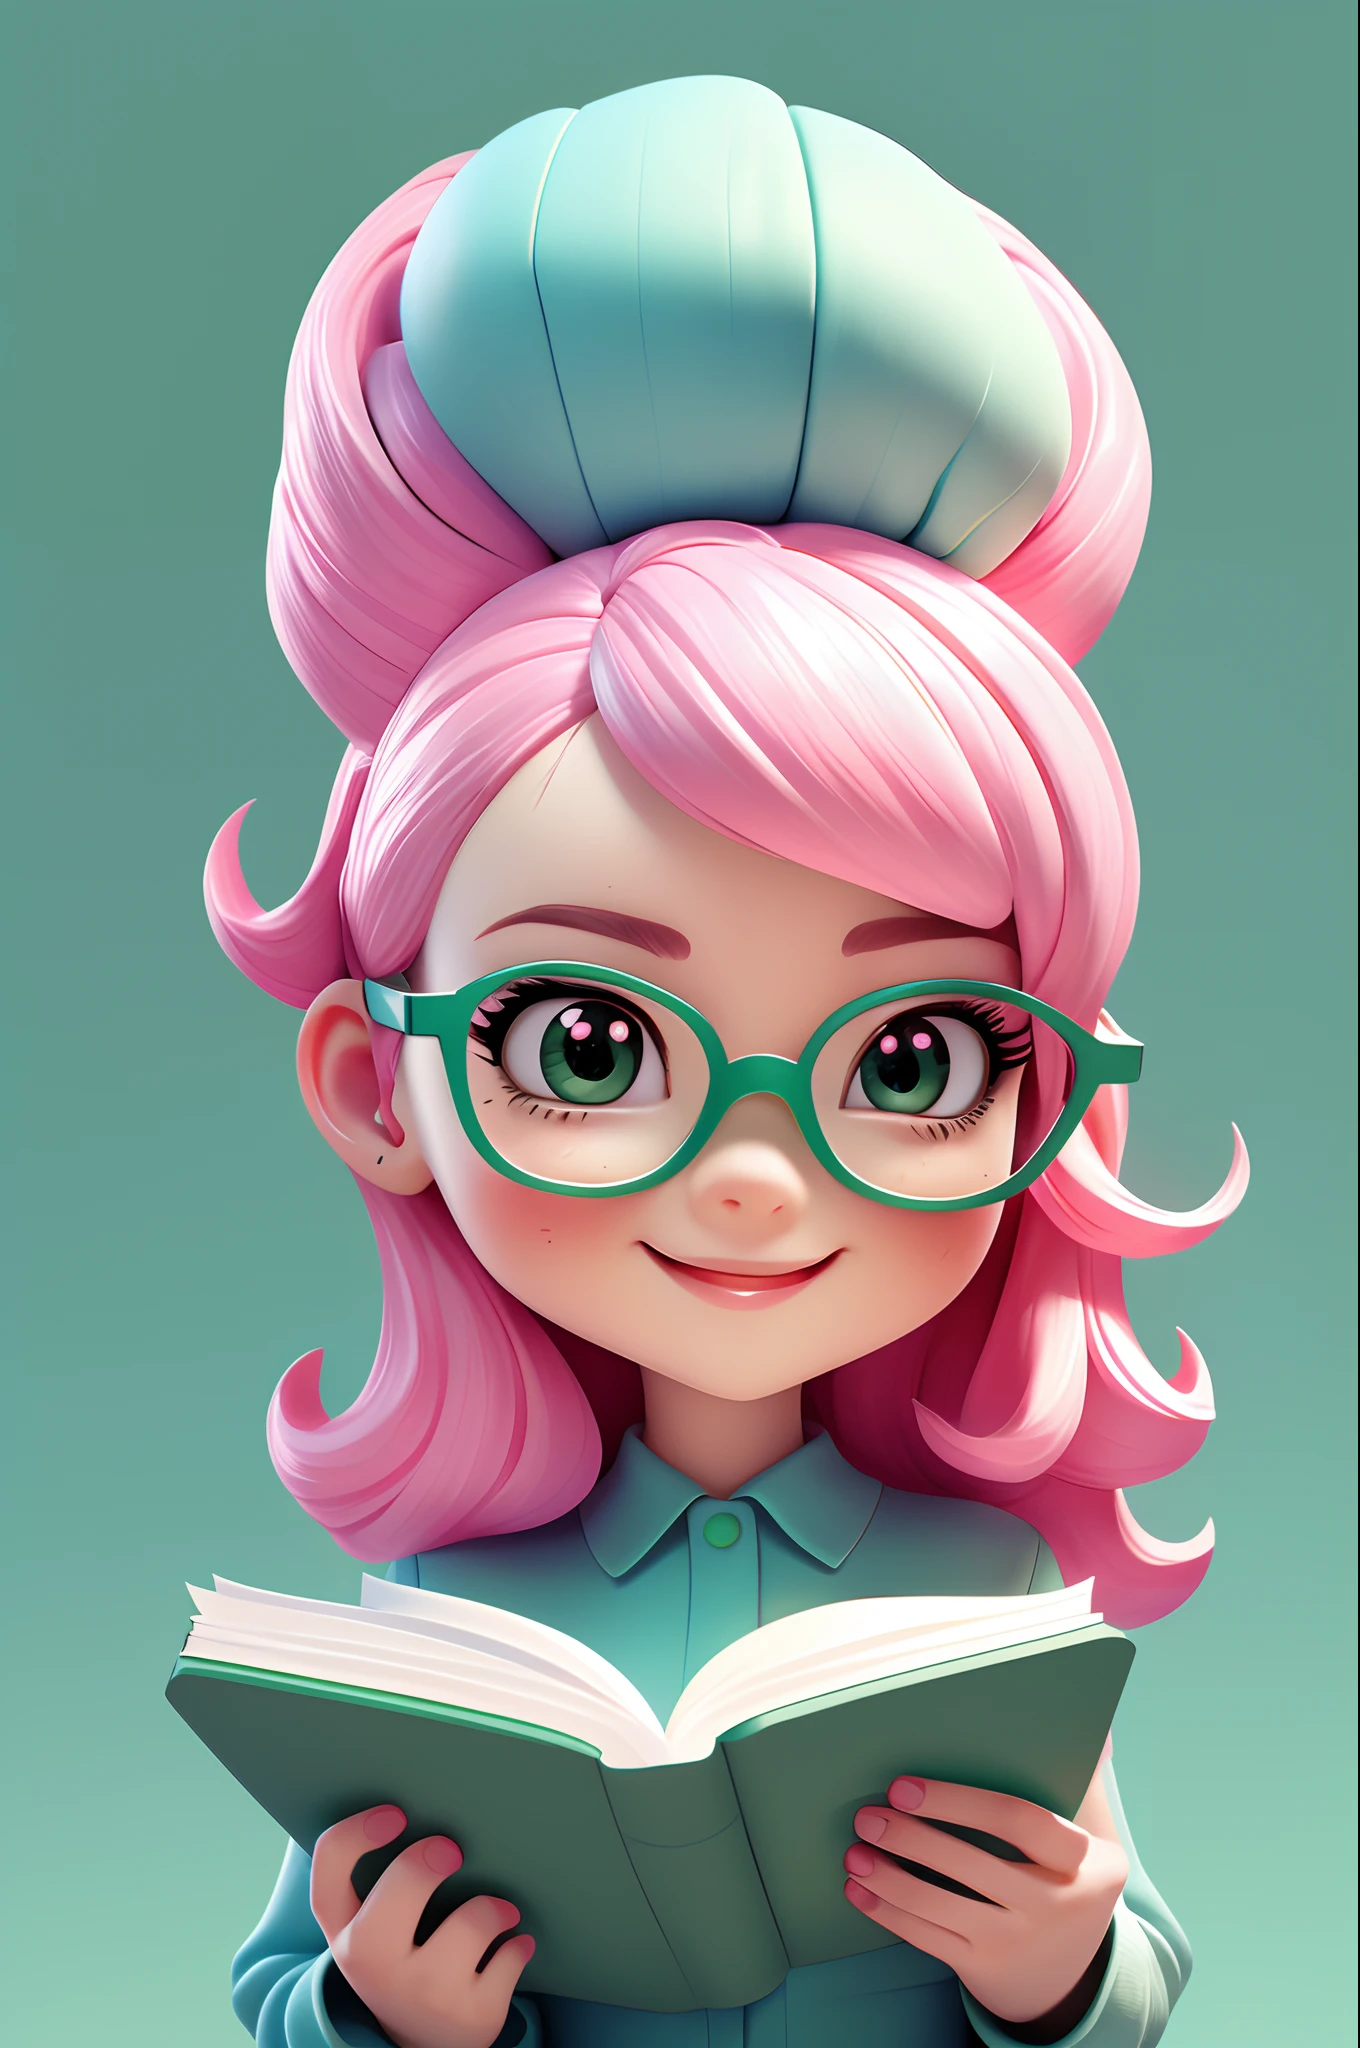 стиль чиби, розовые волосы, голубой костюм, милый, улыбка, Девушка читает книгу в очках, шедевр, 3дм стиль, посмотри на зрителя, (((простой фон))), (((зеленый сплошной фон)))